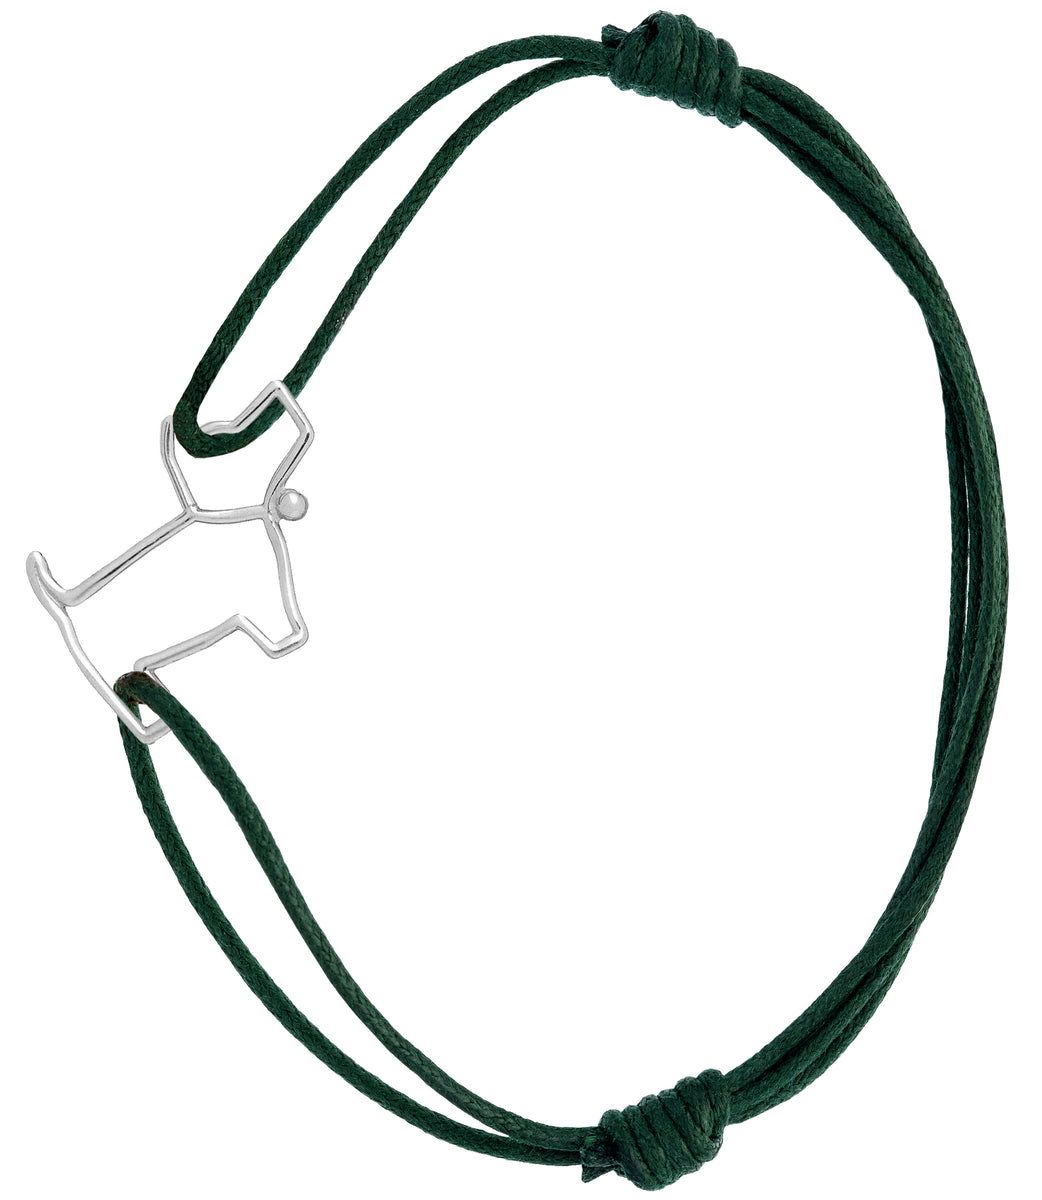 Gold Quimica Cord Bracelet - ALIITA